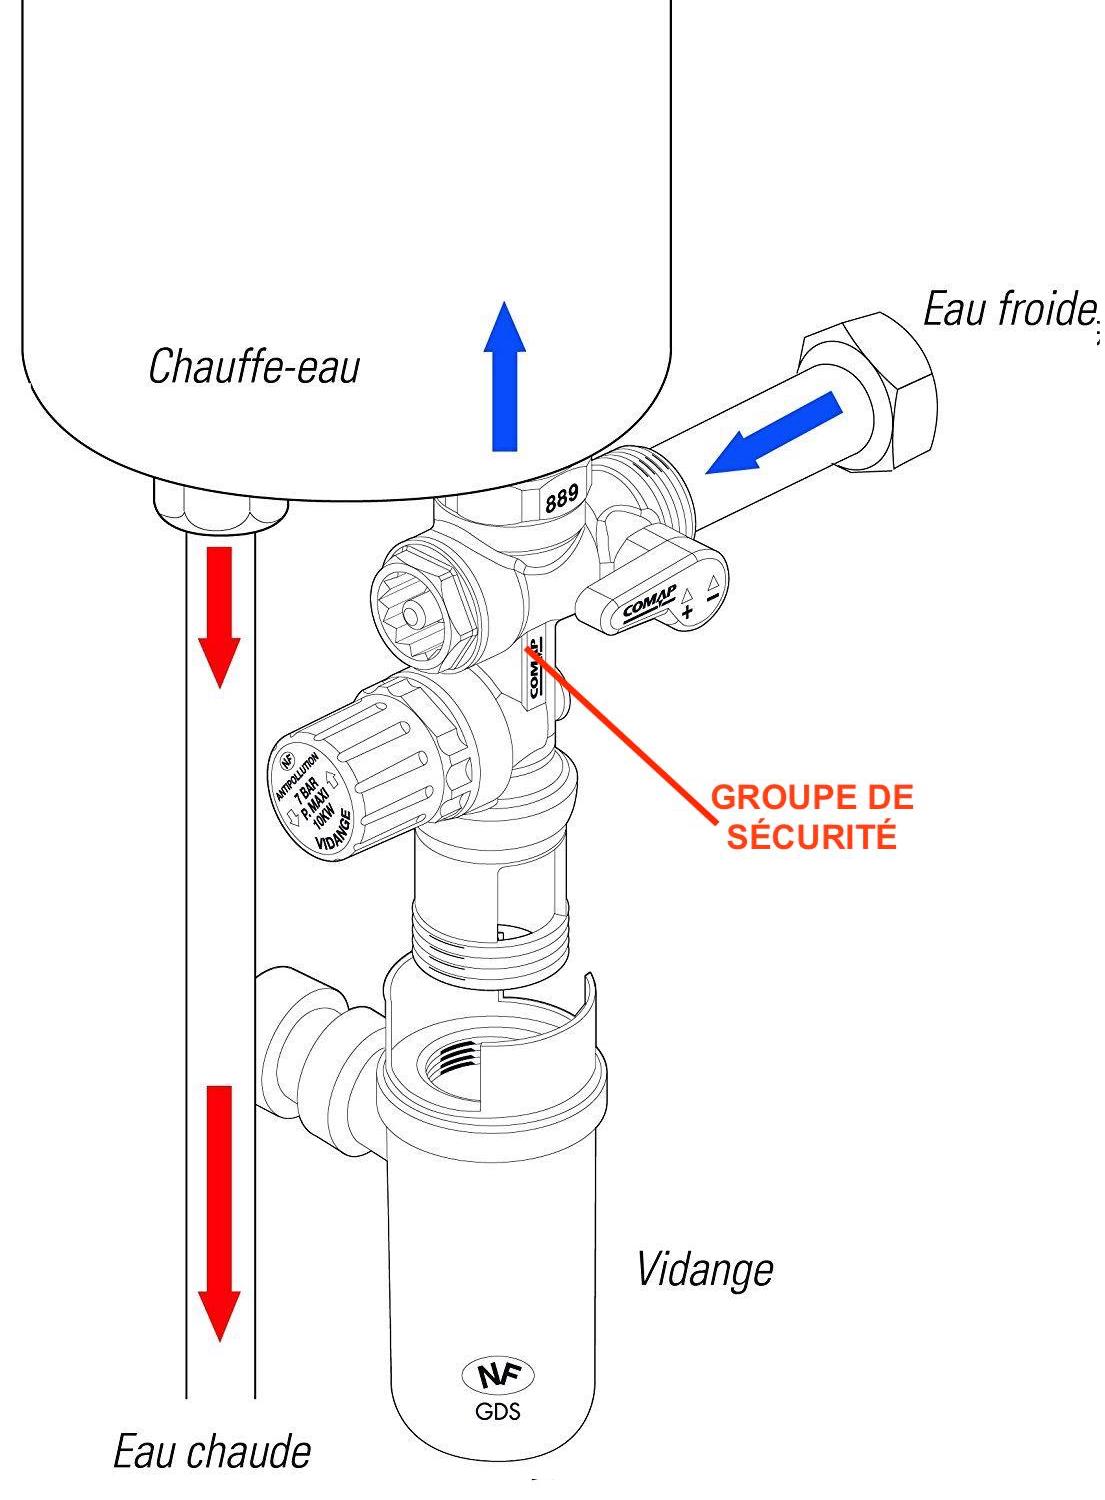 Groupe de securite chauffe eau - Resistance - Contacteur - Anode